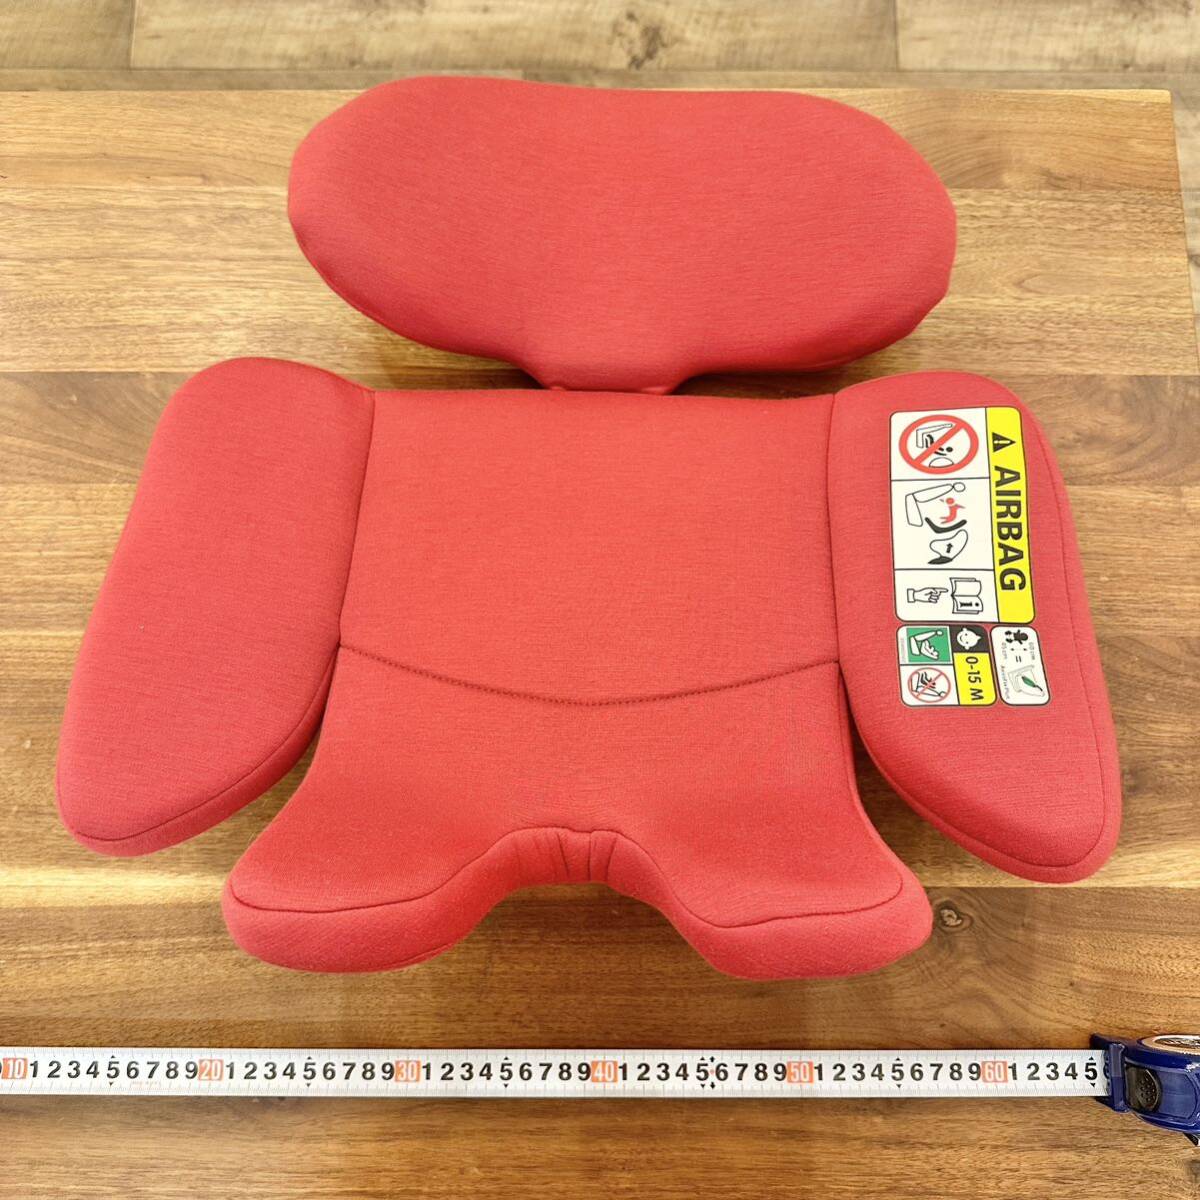  детское кресло новорожденный для подушка maxi kosi Axis фиксирующие детали плюс внутренний подушка красный прекрасный товар предварительный для стирка для 